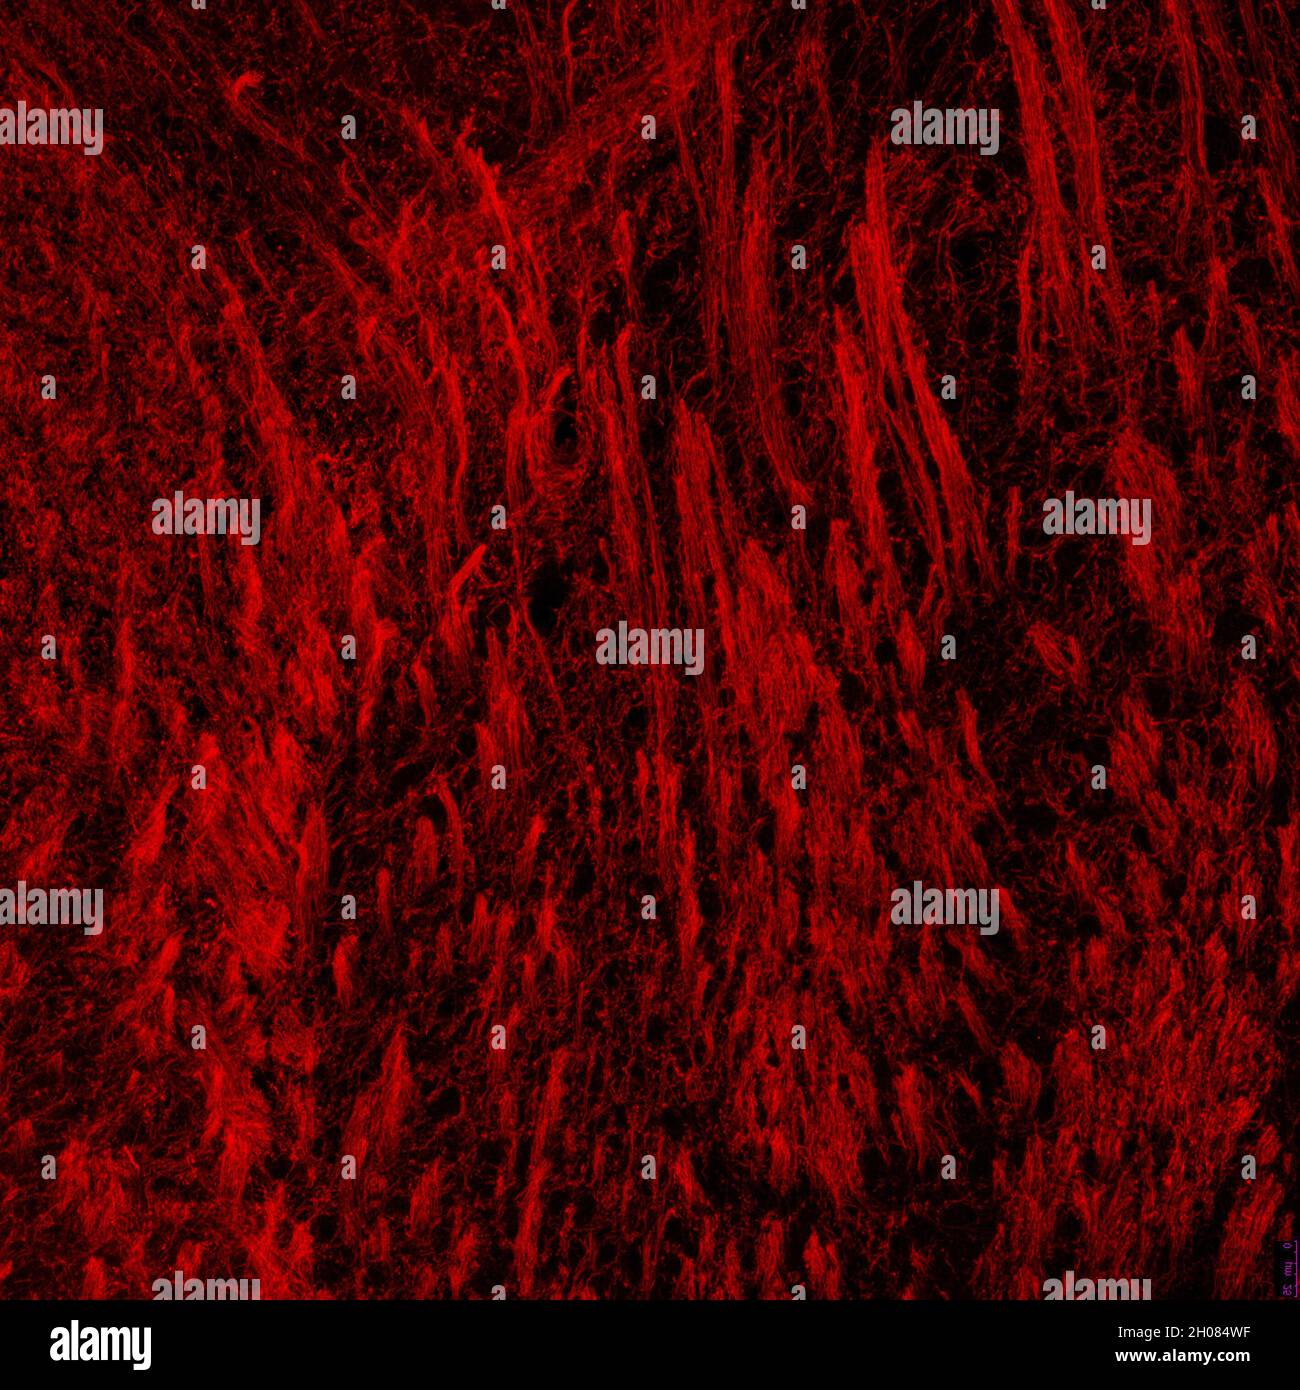 Section de la capsule interne du cerveau de la souris, avec processus oligodendrocytes marqués par immunofluorescence et visualisés au microscope confocal Banque D'Images